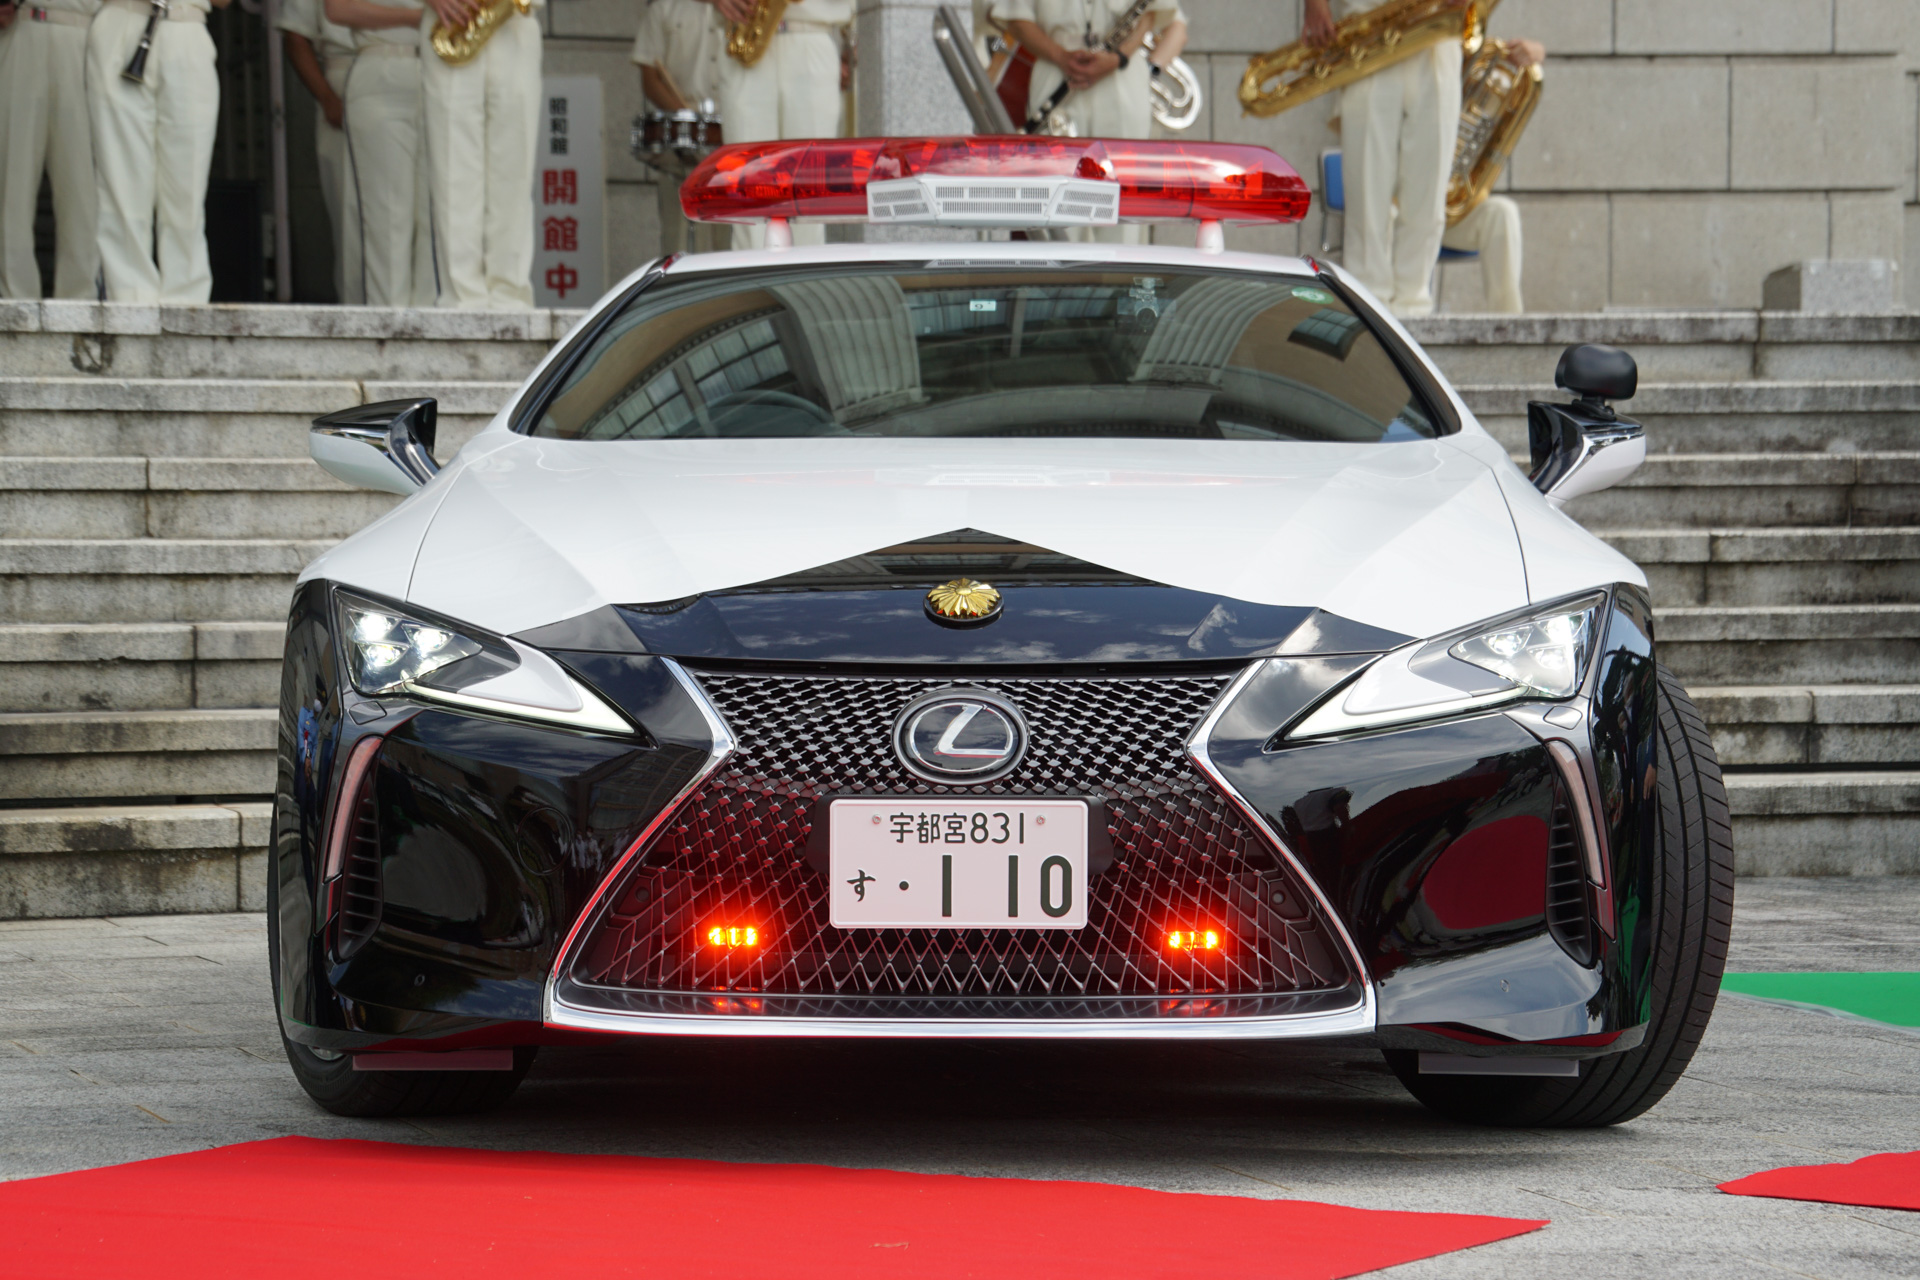 栃木県警察、「レクサスLCパトカー」初公開 1740万円の高級クーペを 